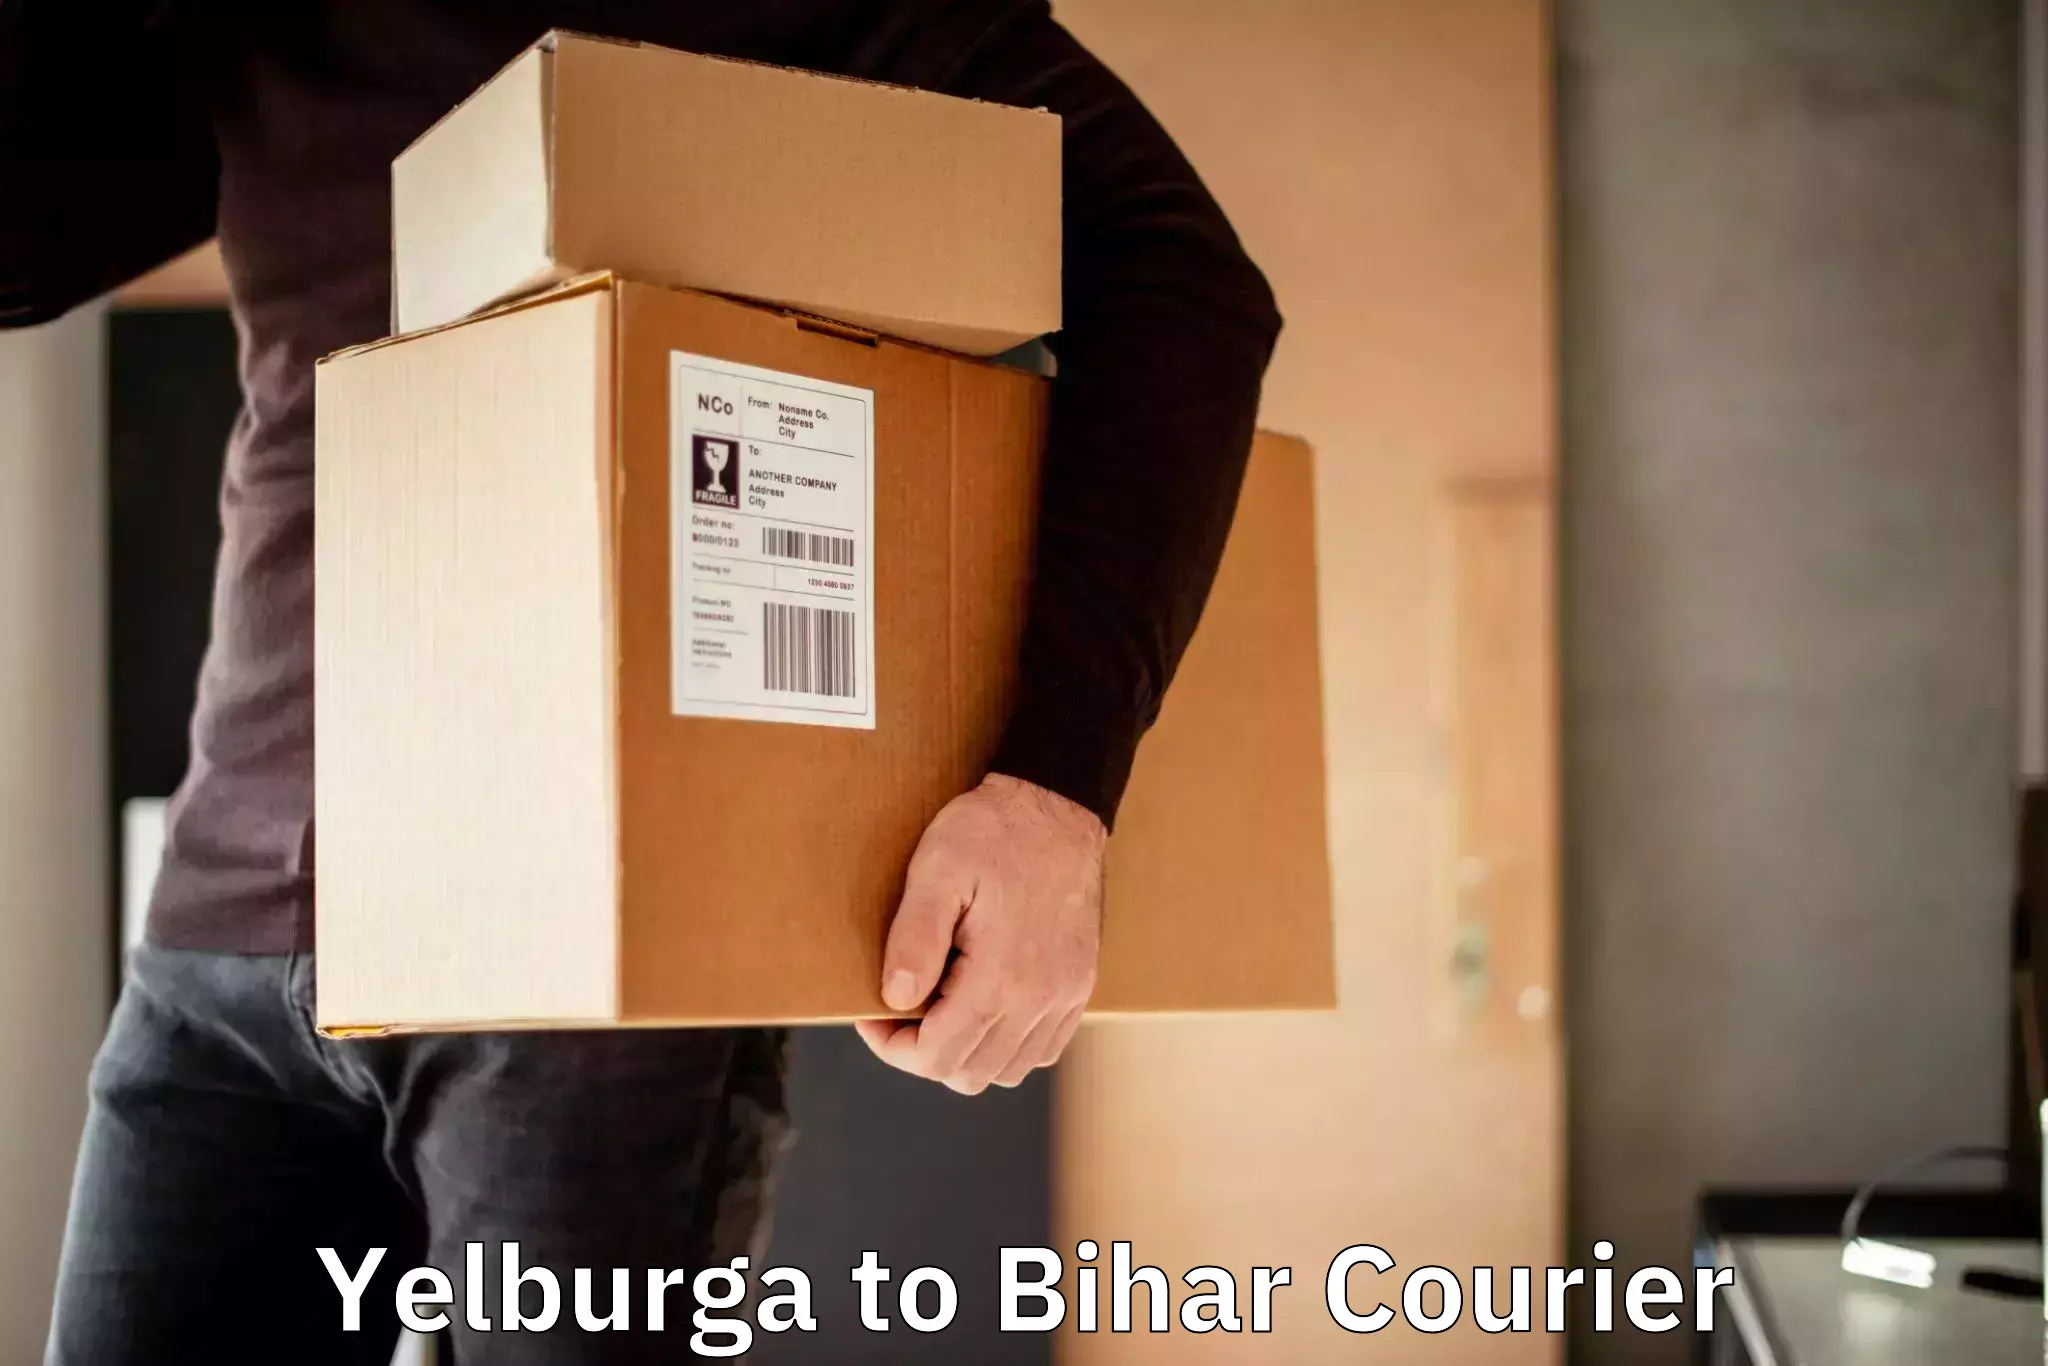 Courier app Yelburga to Saharsa